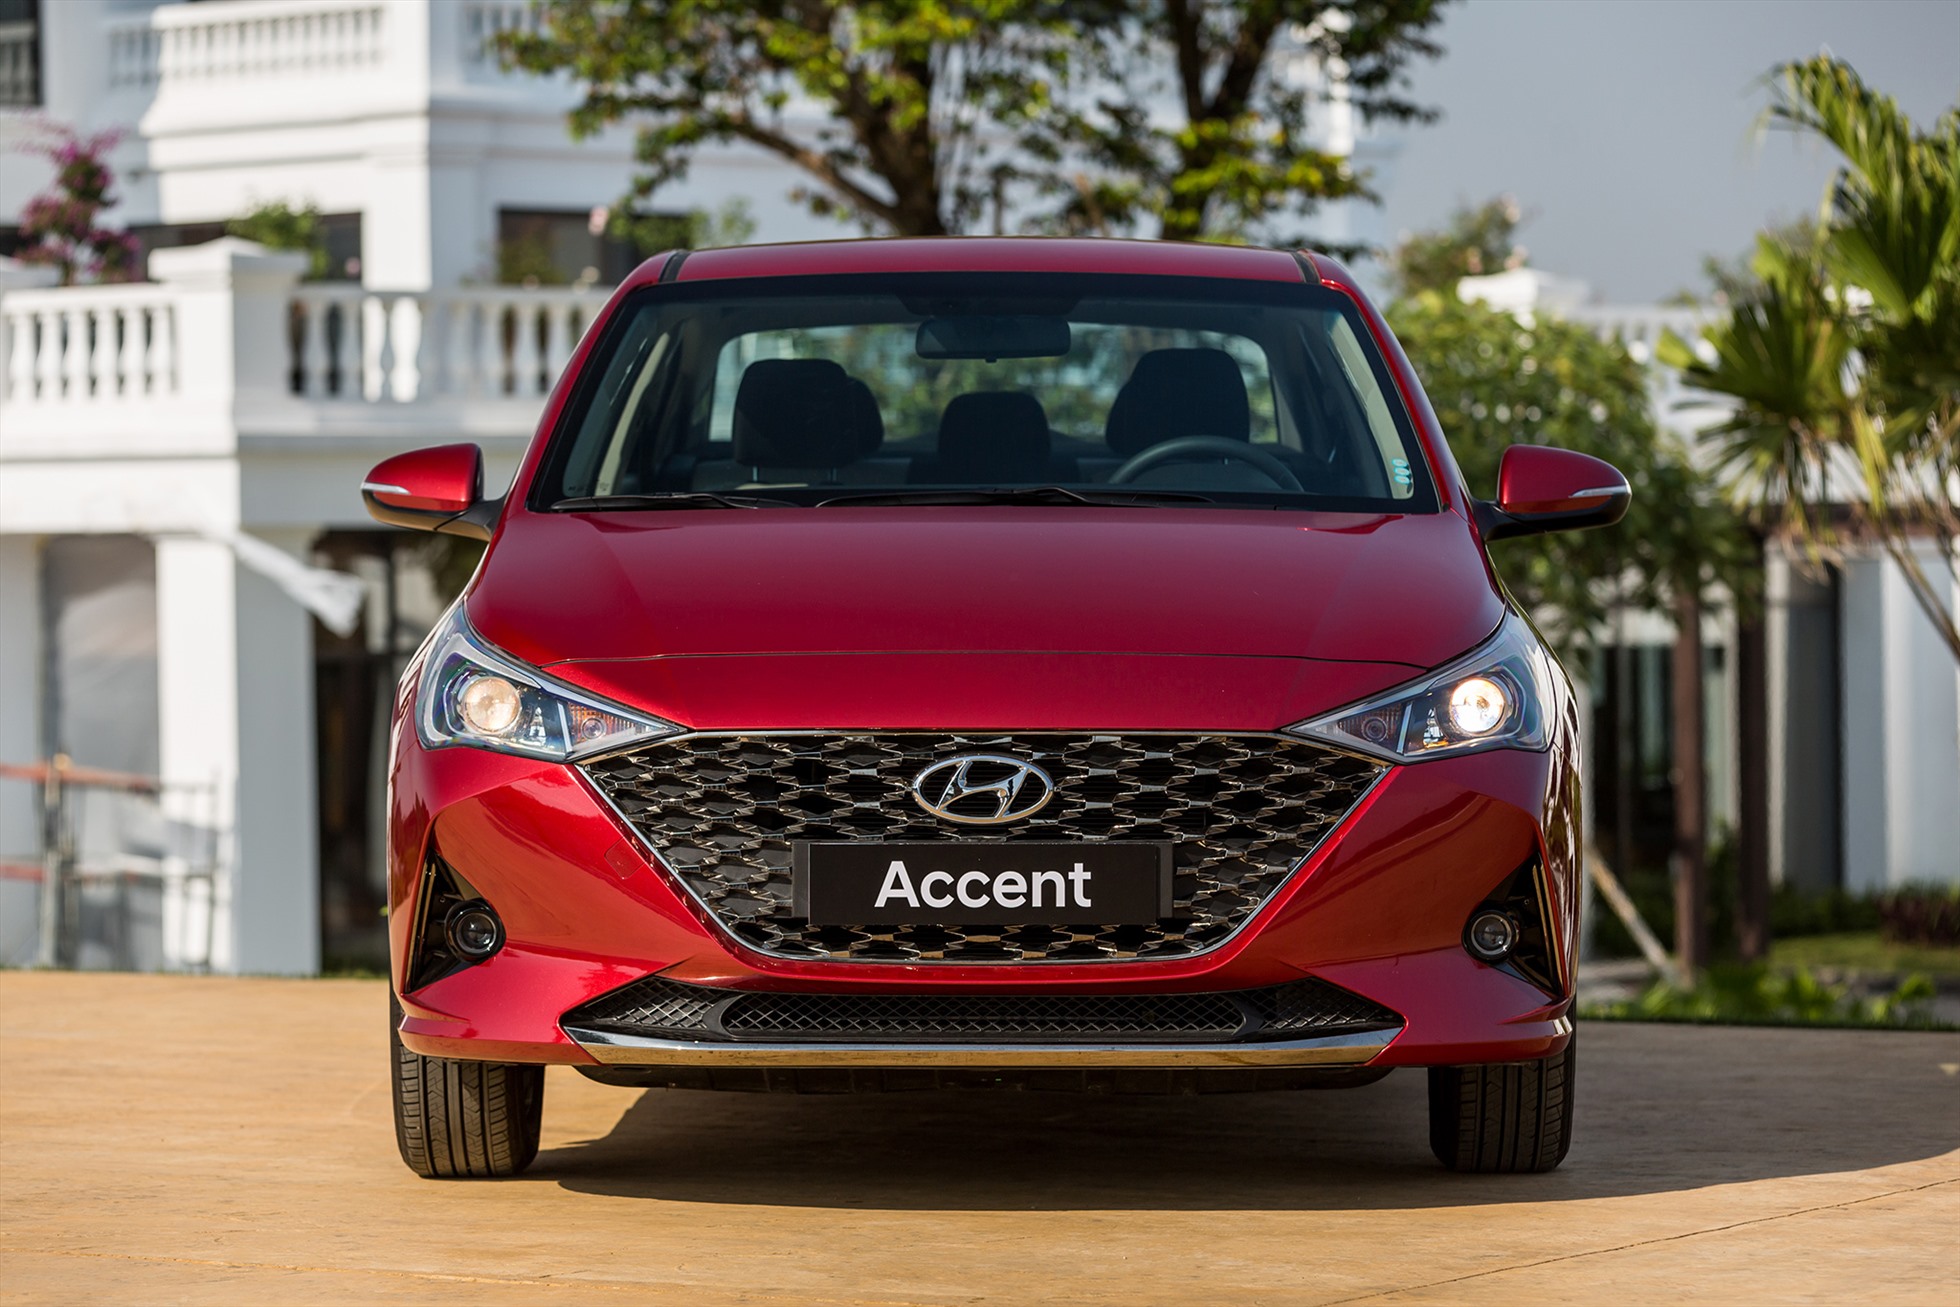 Dẫn đầu danh sách 10 ô tô bán chạy nhất Việt Nam tháng 1.2023 là Hyundai Accent với doanh số bán đạt 1.024 xe. Dù giảm tới hơn 1.900 xe so với tháng 12.2022 nhưng đặt trong bối cảnh sức mua ô tô toàn thị trường đang “chững lại“, việc xếp ở vị trí dẫn đầu cũng phần nào cho thấy sức hút của mẫu sedan hạng B này. Đây cũng là mẫu ô tô du lịch duy nhất trên thị trường đạt doanh số bán trên 1.000 xe trong tháng 1.2023.